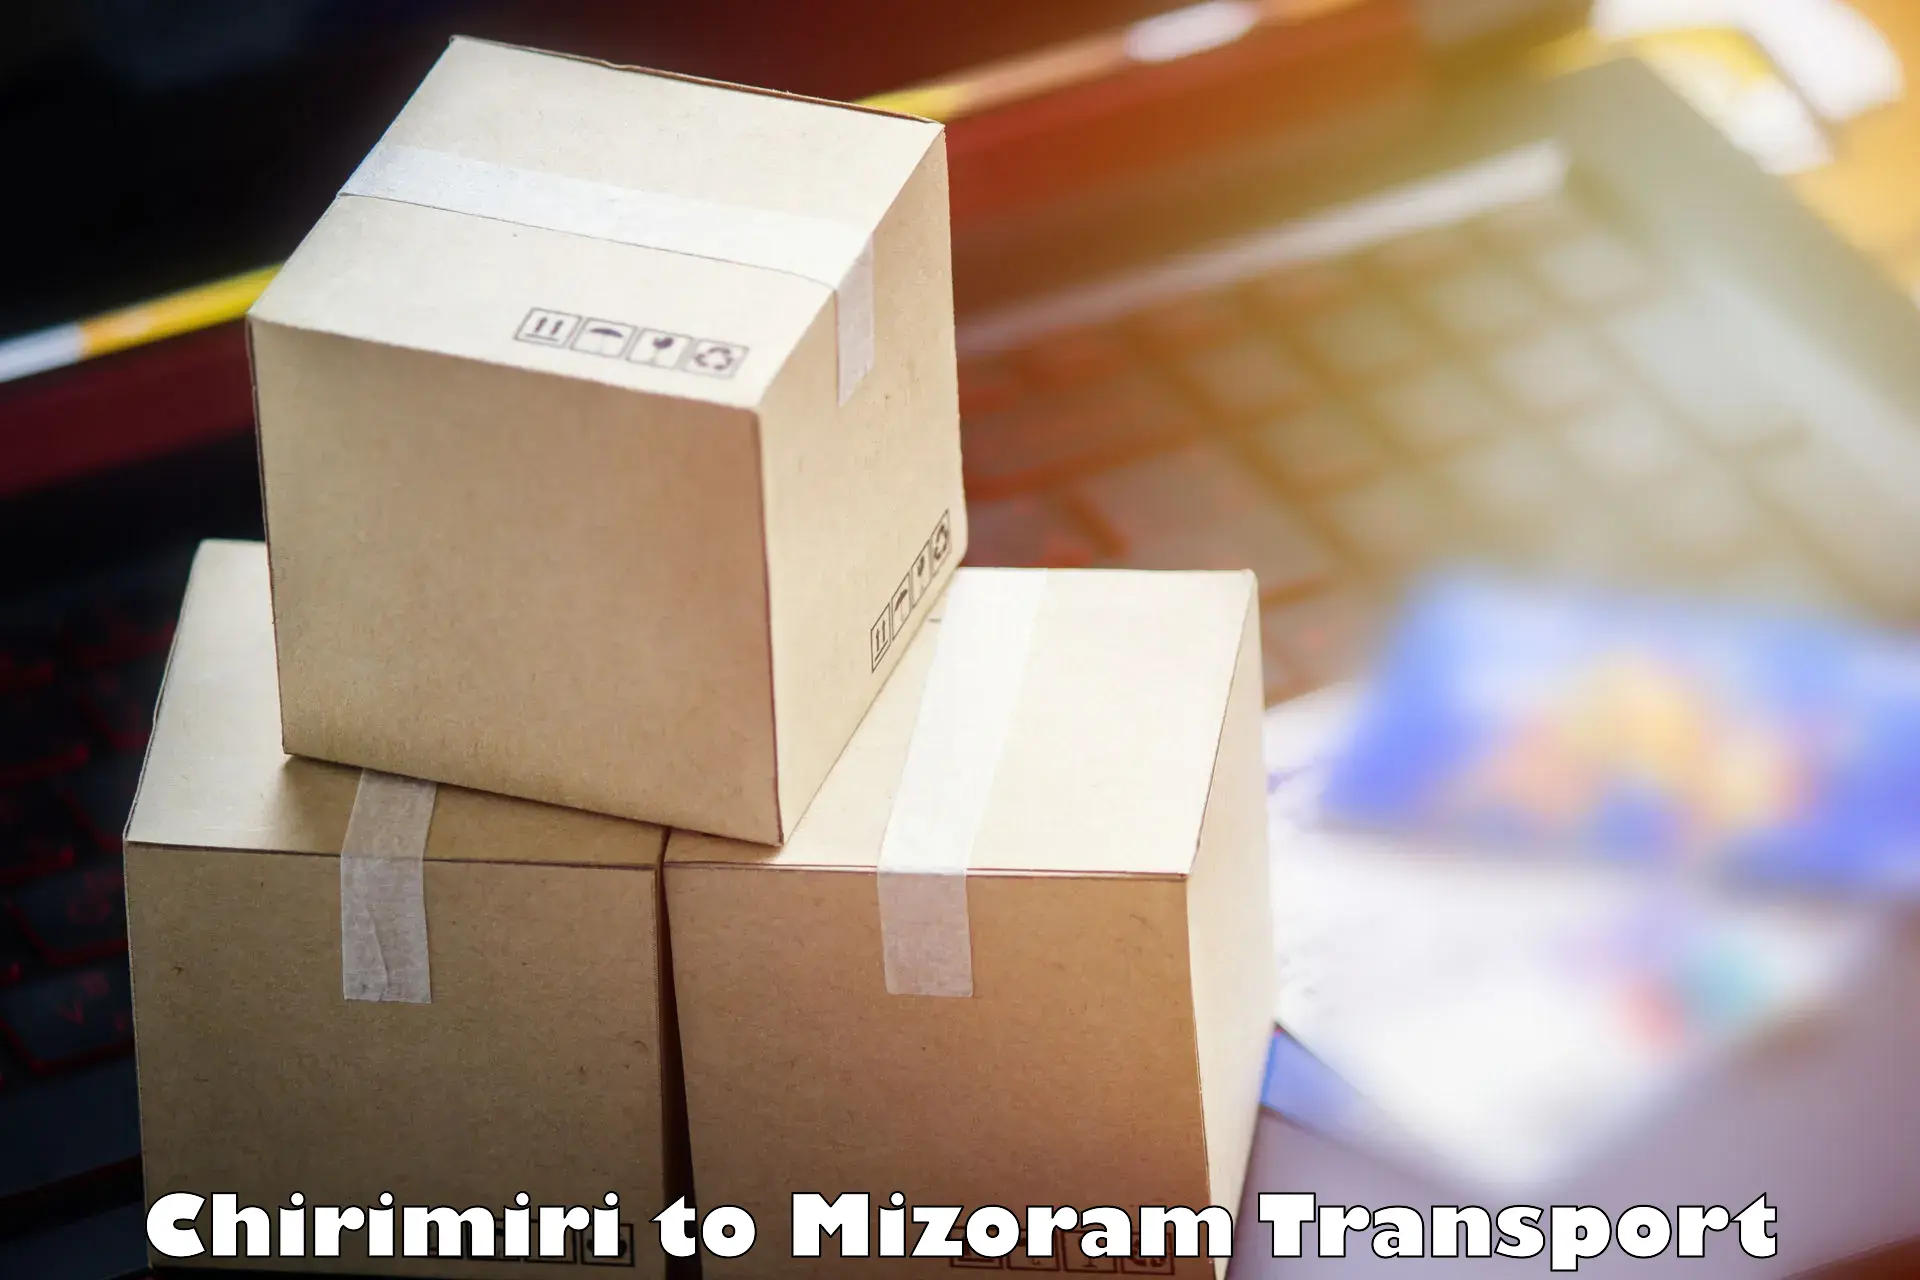 Material transport services Chirimiri to Mizoram